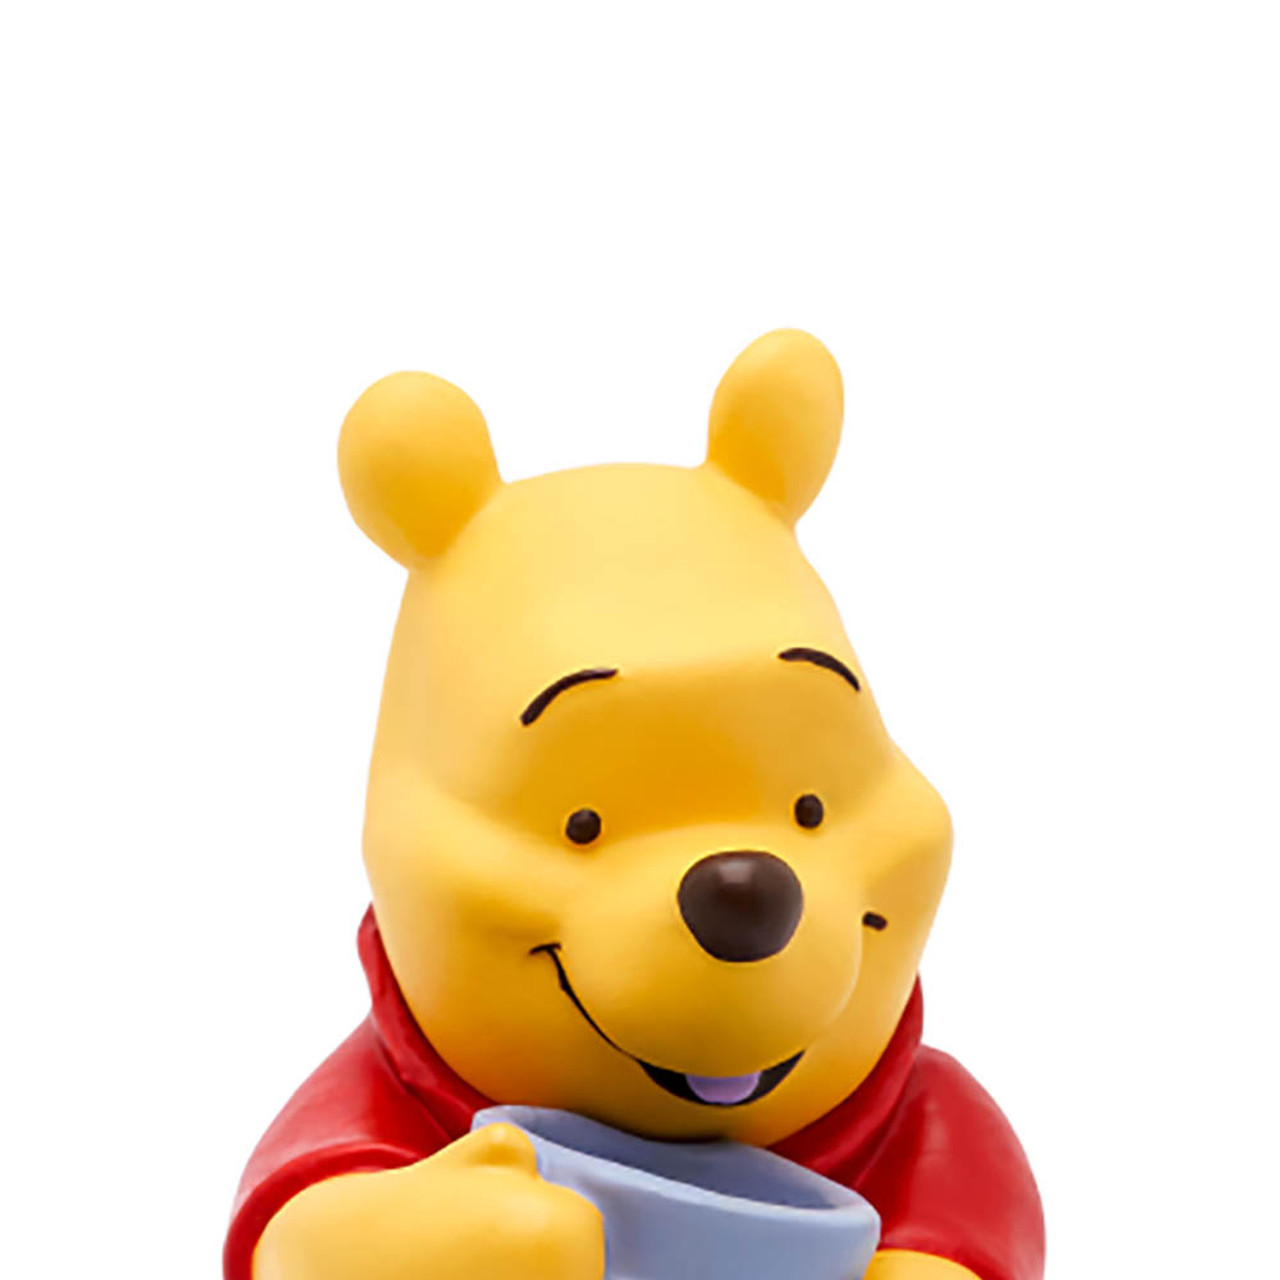 Disney Winnie the Pooh Tonie